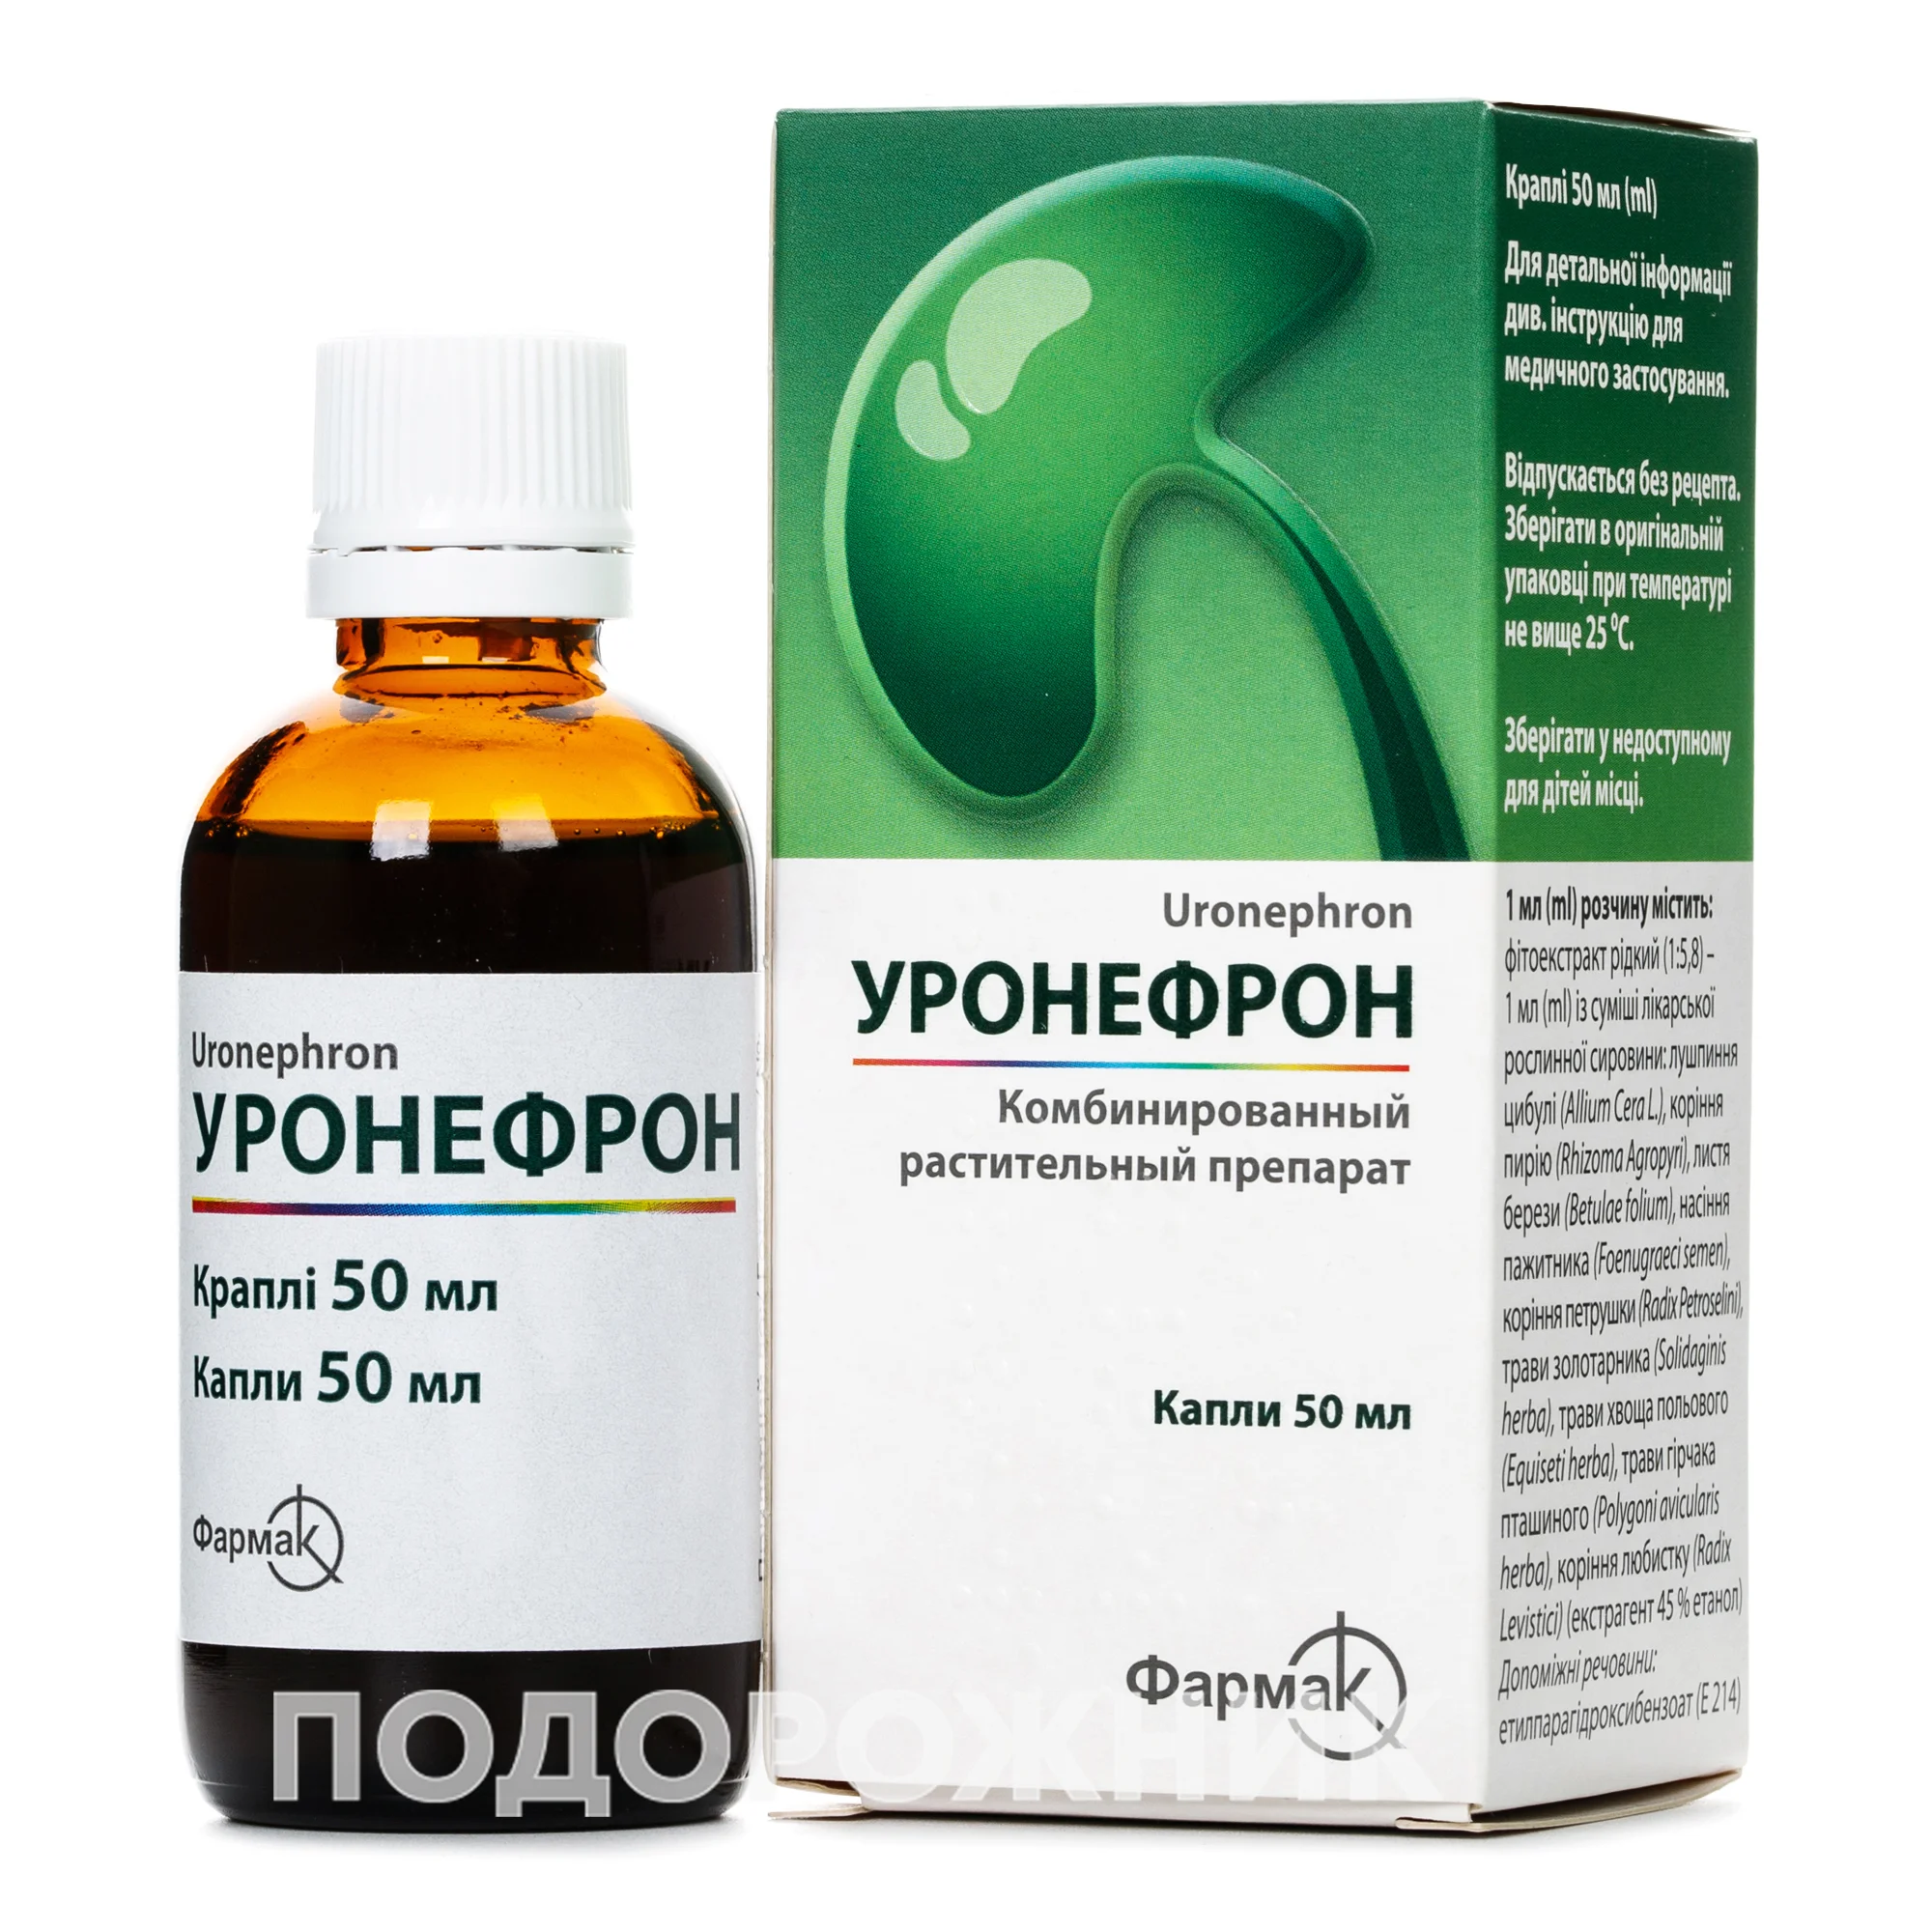 Топ-5 эффективных лекарств для лечения простатита